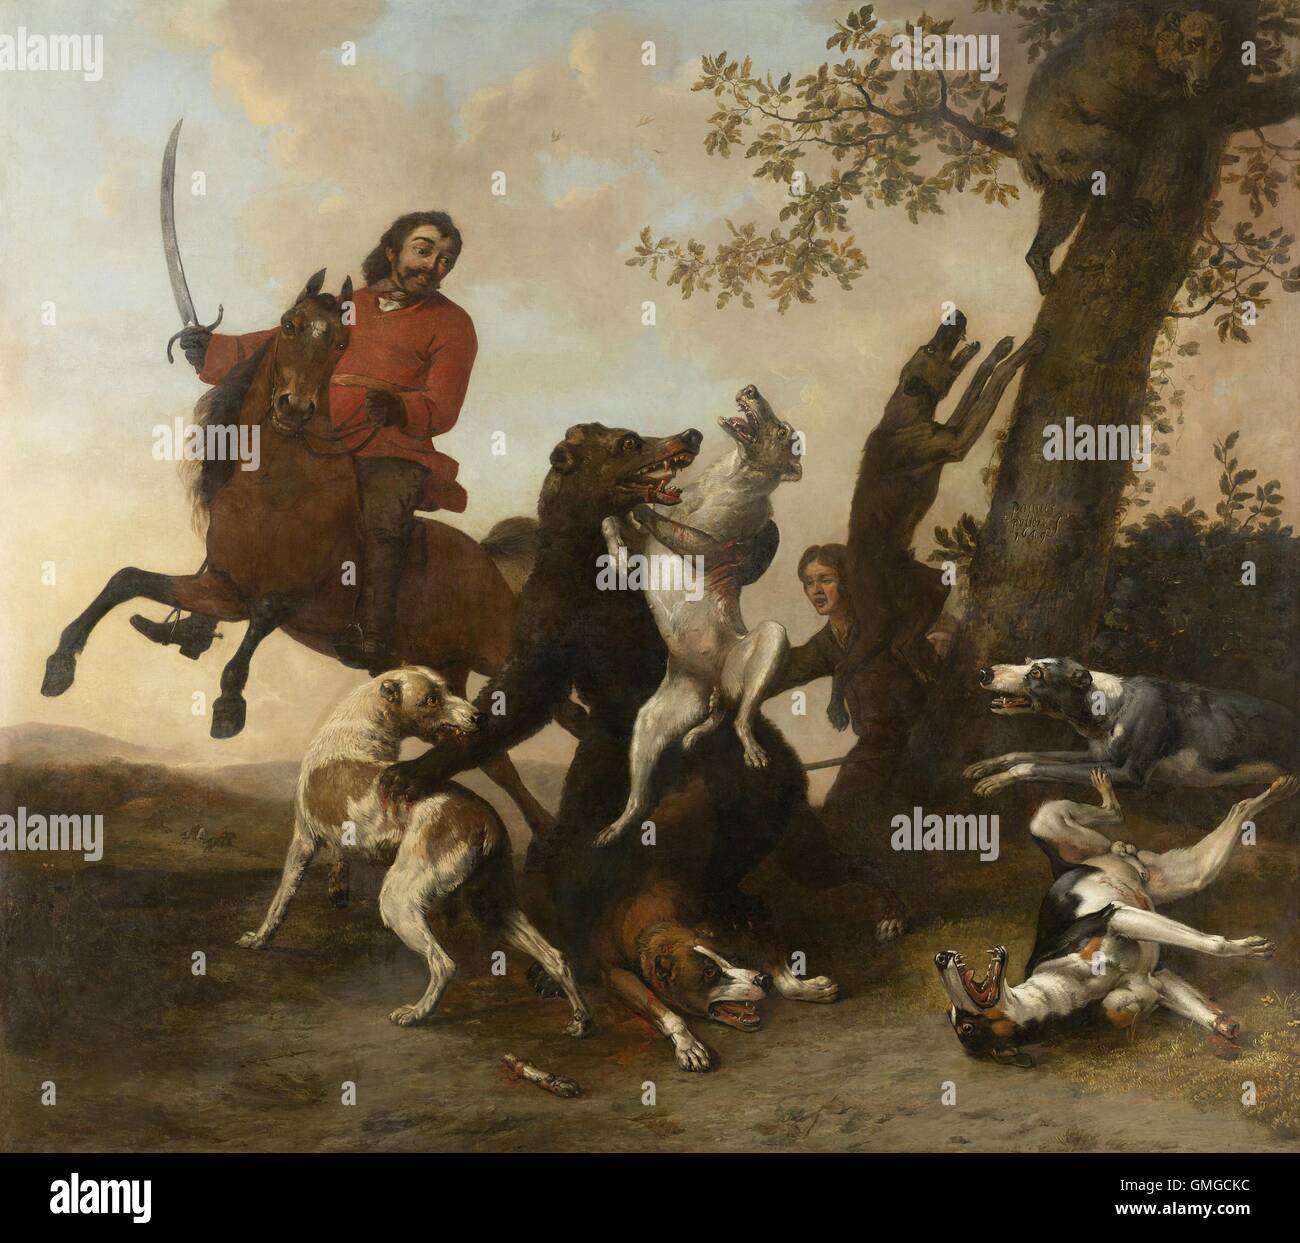 Bear Hunt, par Paulus Potter, 1649, la peinture hollandaise, huile sur toile. Porter se bat pour sa vie avec une meute de chiens et un chasseur à cheval avec l'épée nue. Un autre ours s'enfuit dans un arbre (BSLOC 2016 3 303) Banque D'Images